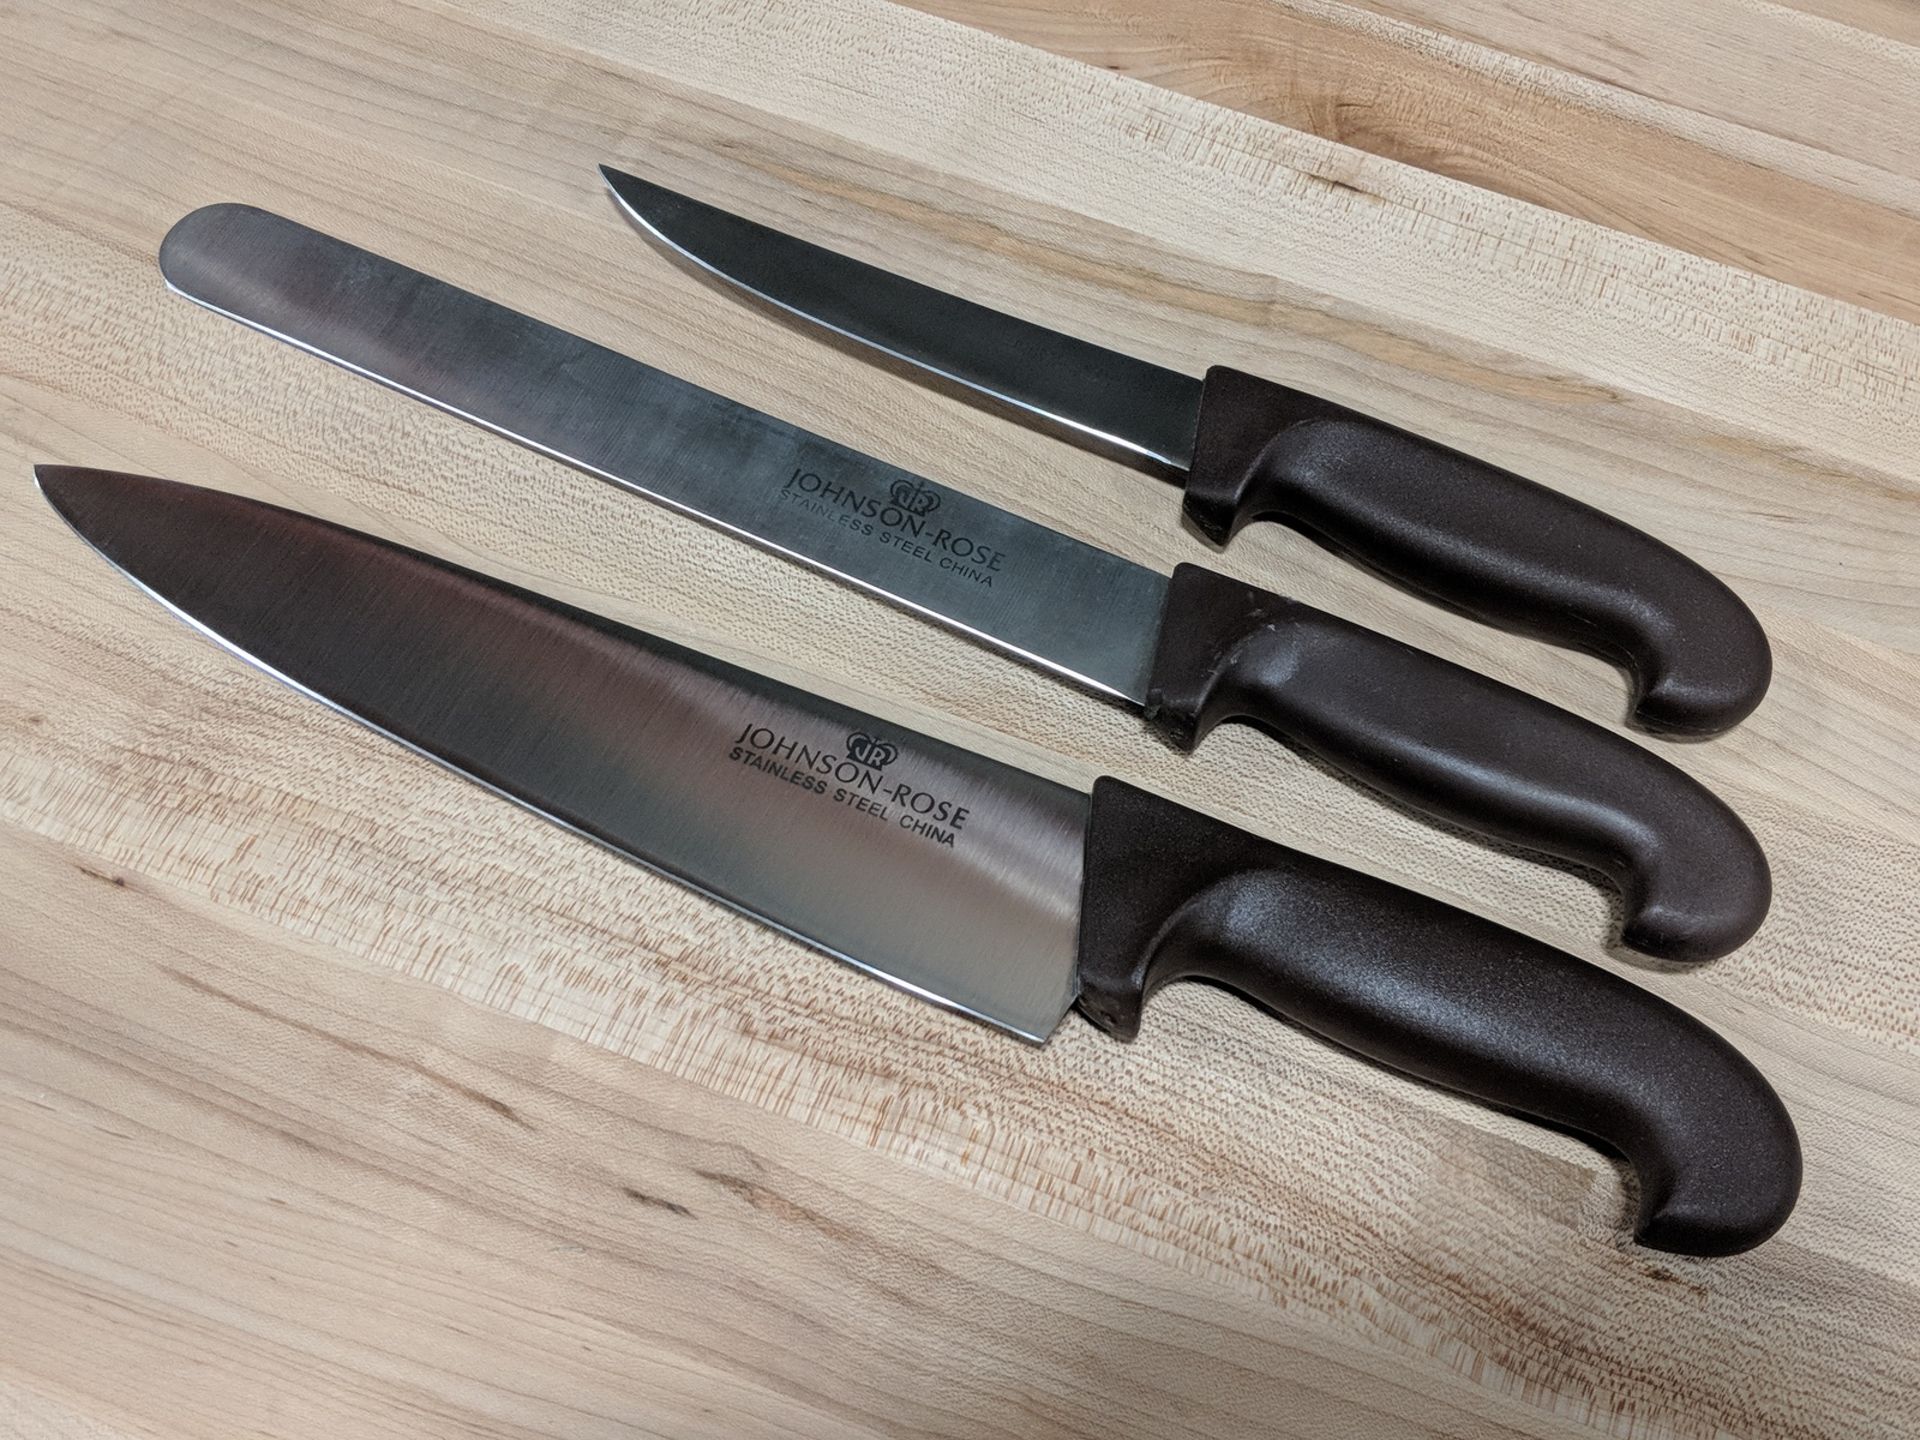 10" Chef Knife, 10" Slicing Knife, 6" Boning Knife - Set of 3 Knives - Image 2 of 4